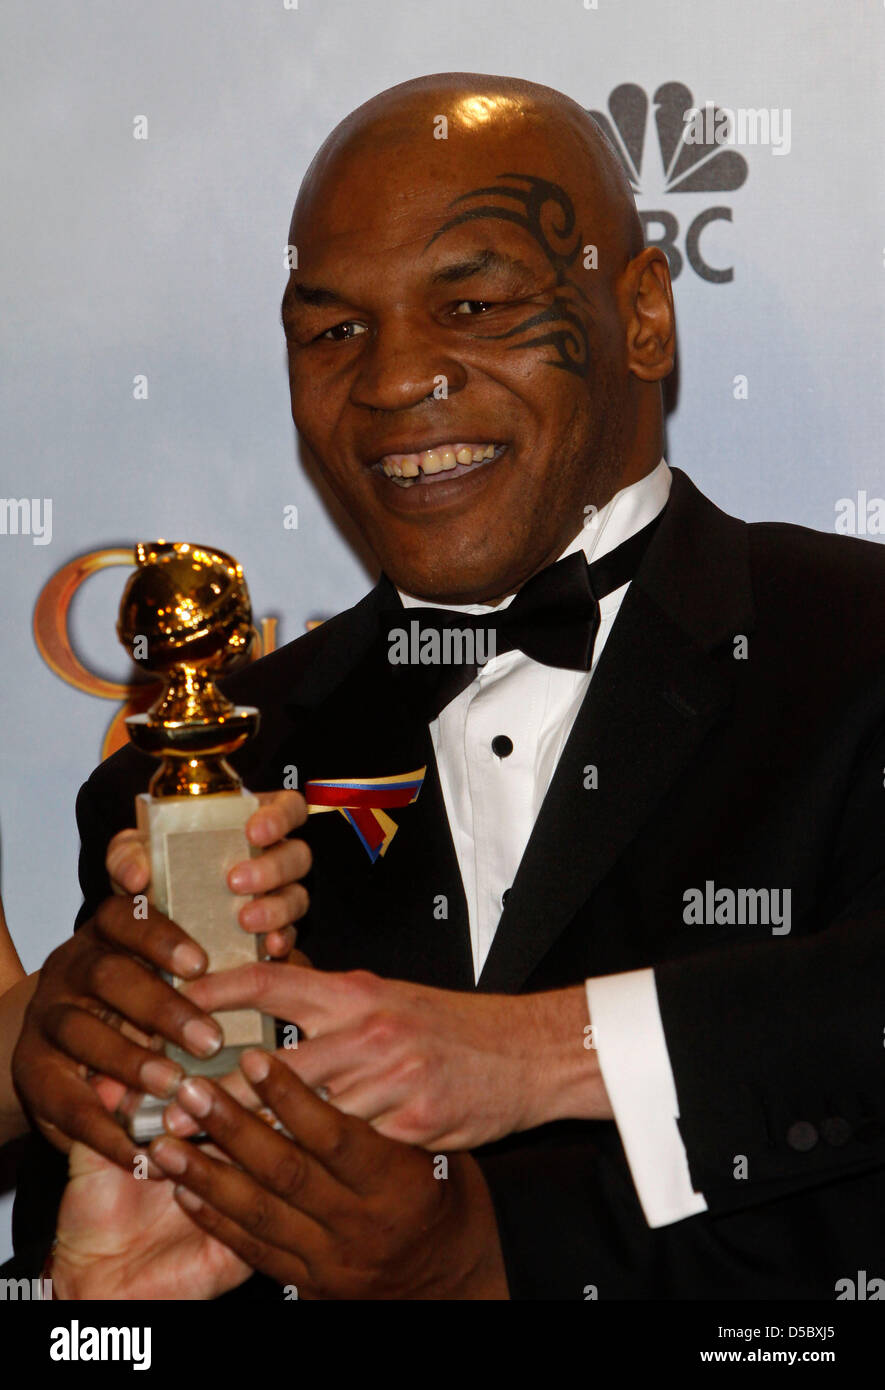 US-Boxer Mike Tyson stellt im Drucksaal die 67. Annual Golden Globes Awards von der Hollywood Foreign Press Association im Hotel Beverly Hilton in Beverly Hills, Los Angeles, USA, 17. Januar 2010 vorgestellt. Foto: Hubert Boesl Stockfoto